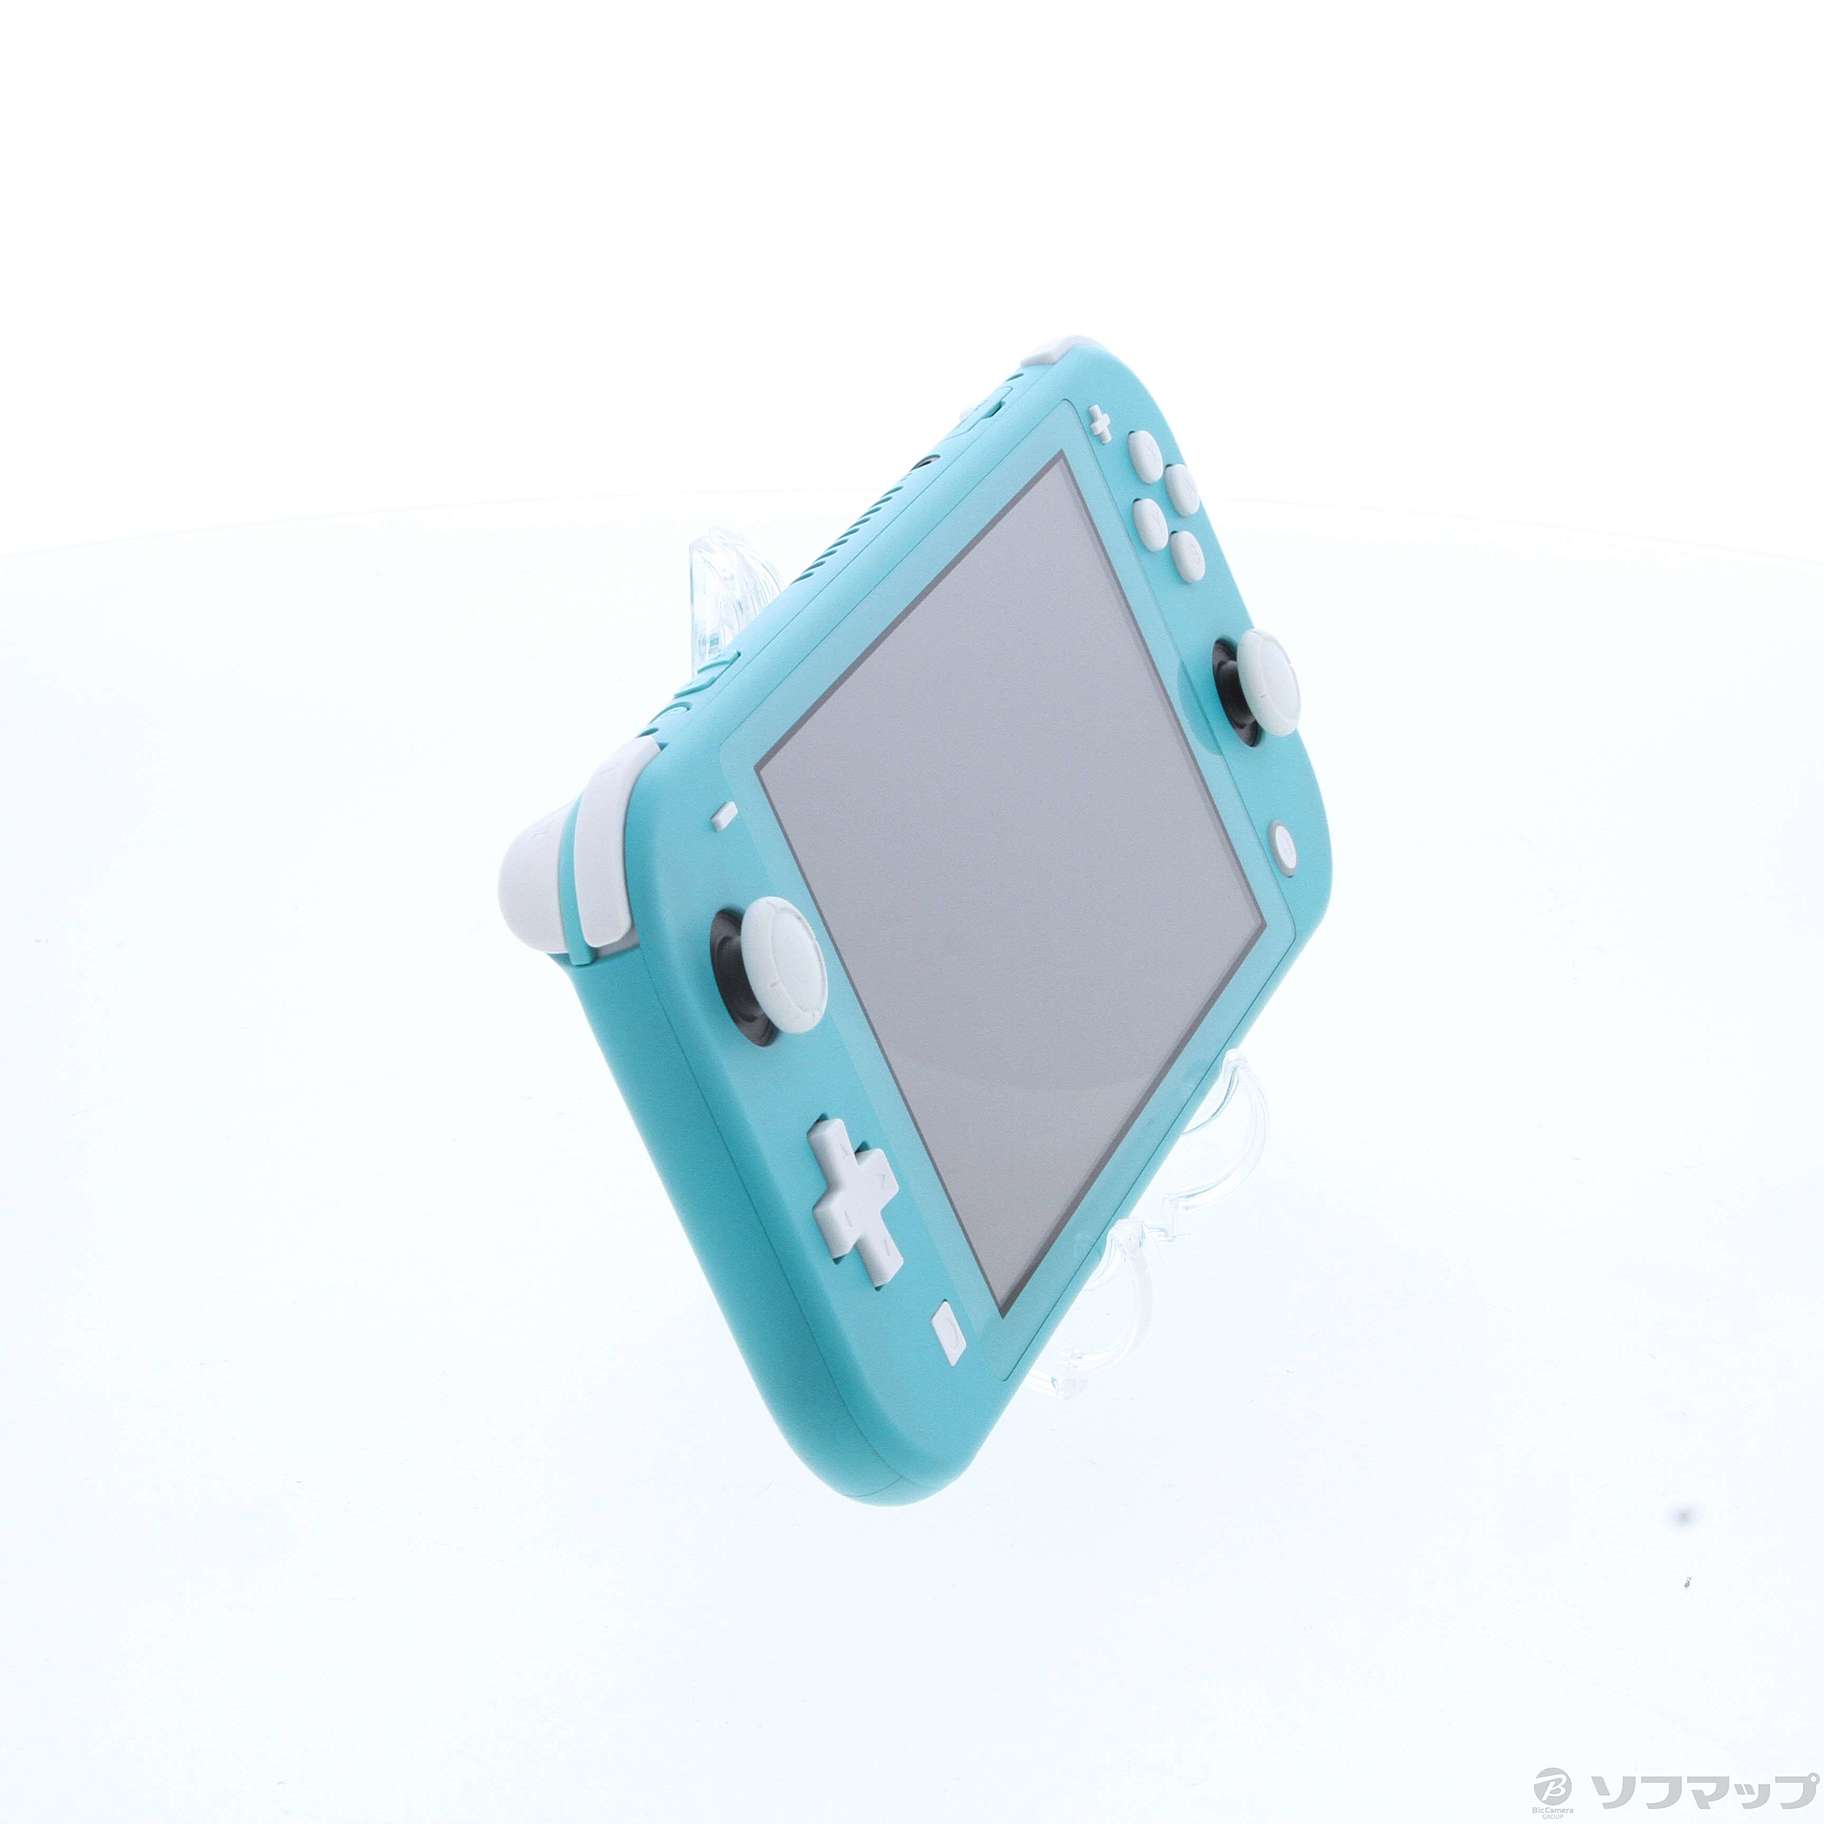 中古品〕 Nintendo Switch Lite ターコイズ｜の通販はアキバ ...